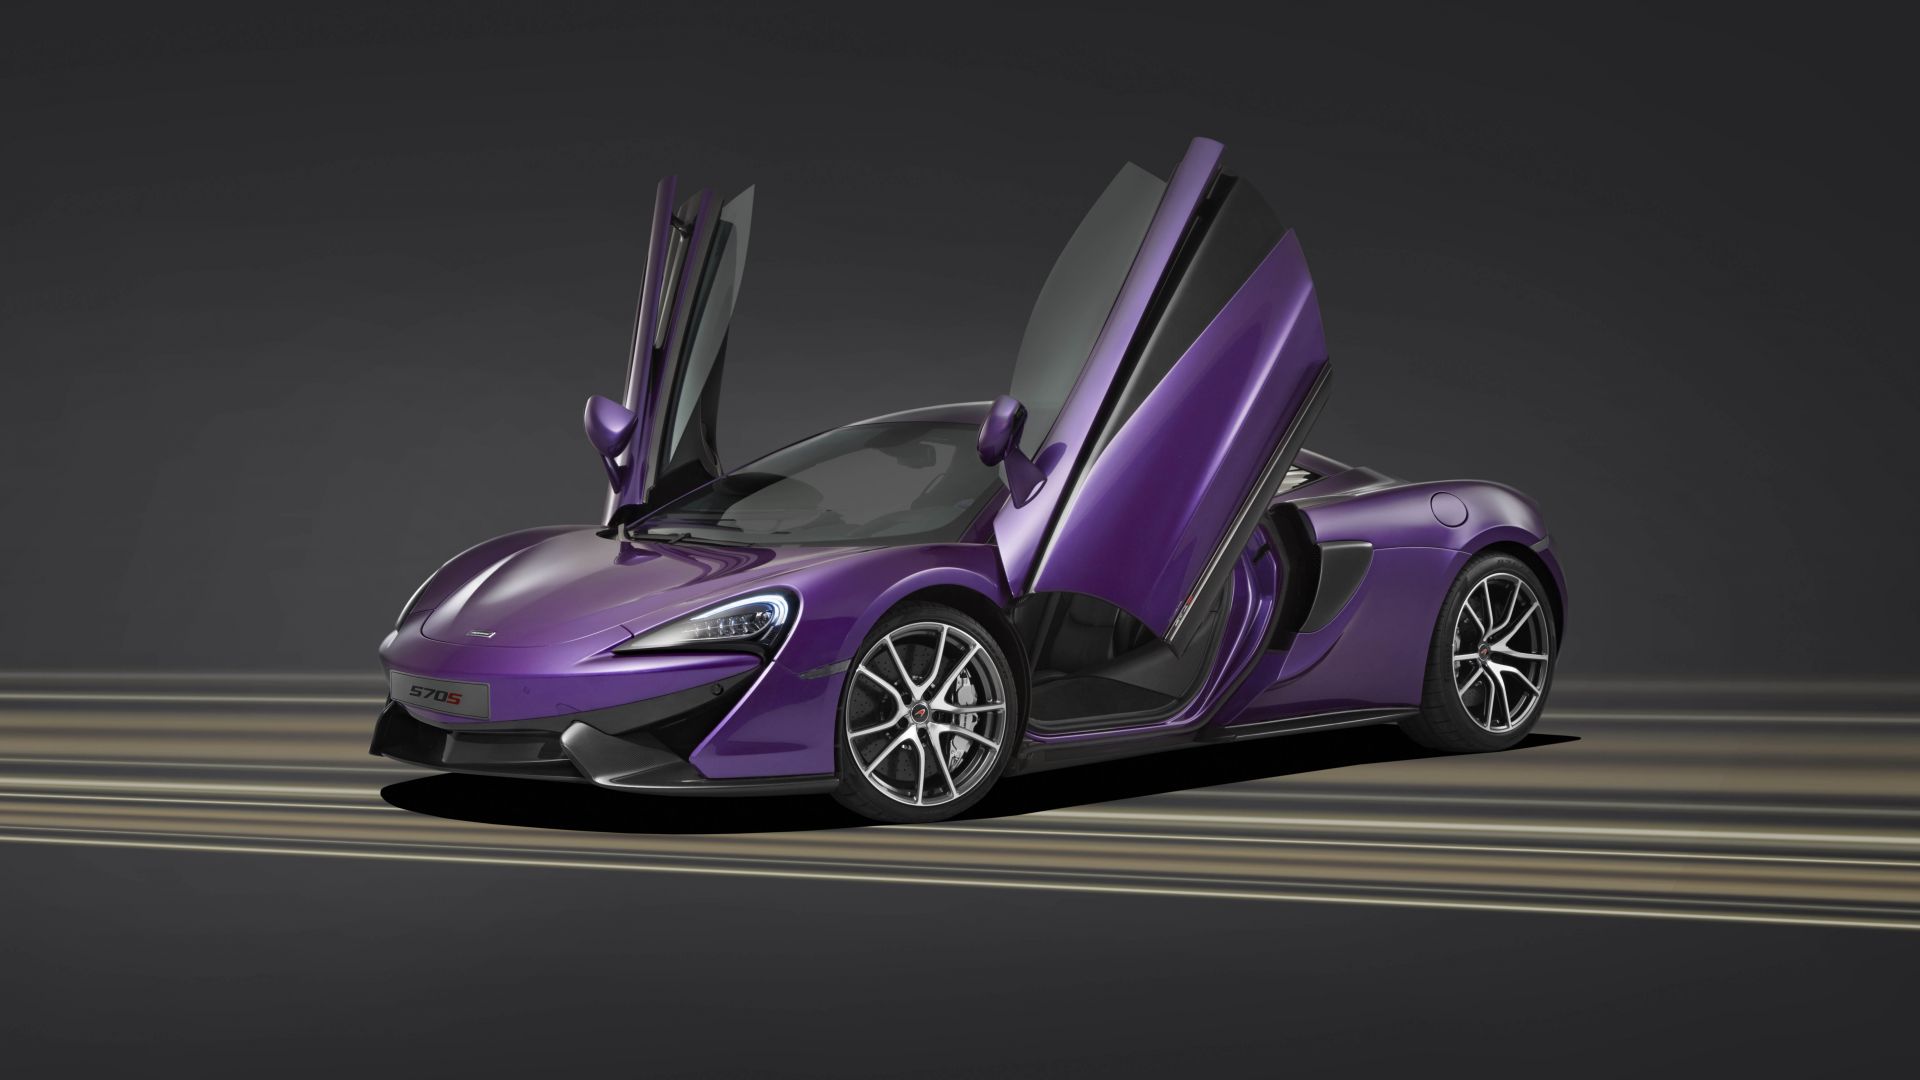 МакЛарен 570С МСО, спортивная серия, фиолетовый, McLaren 570S MSO, sport series, purple (horizontal)